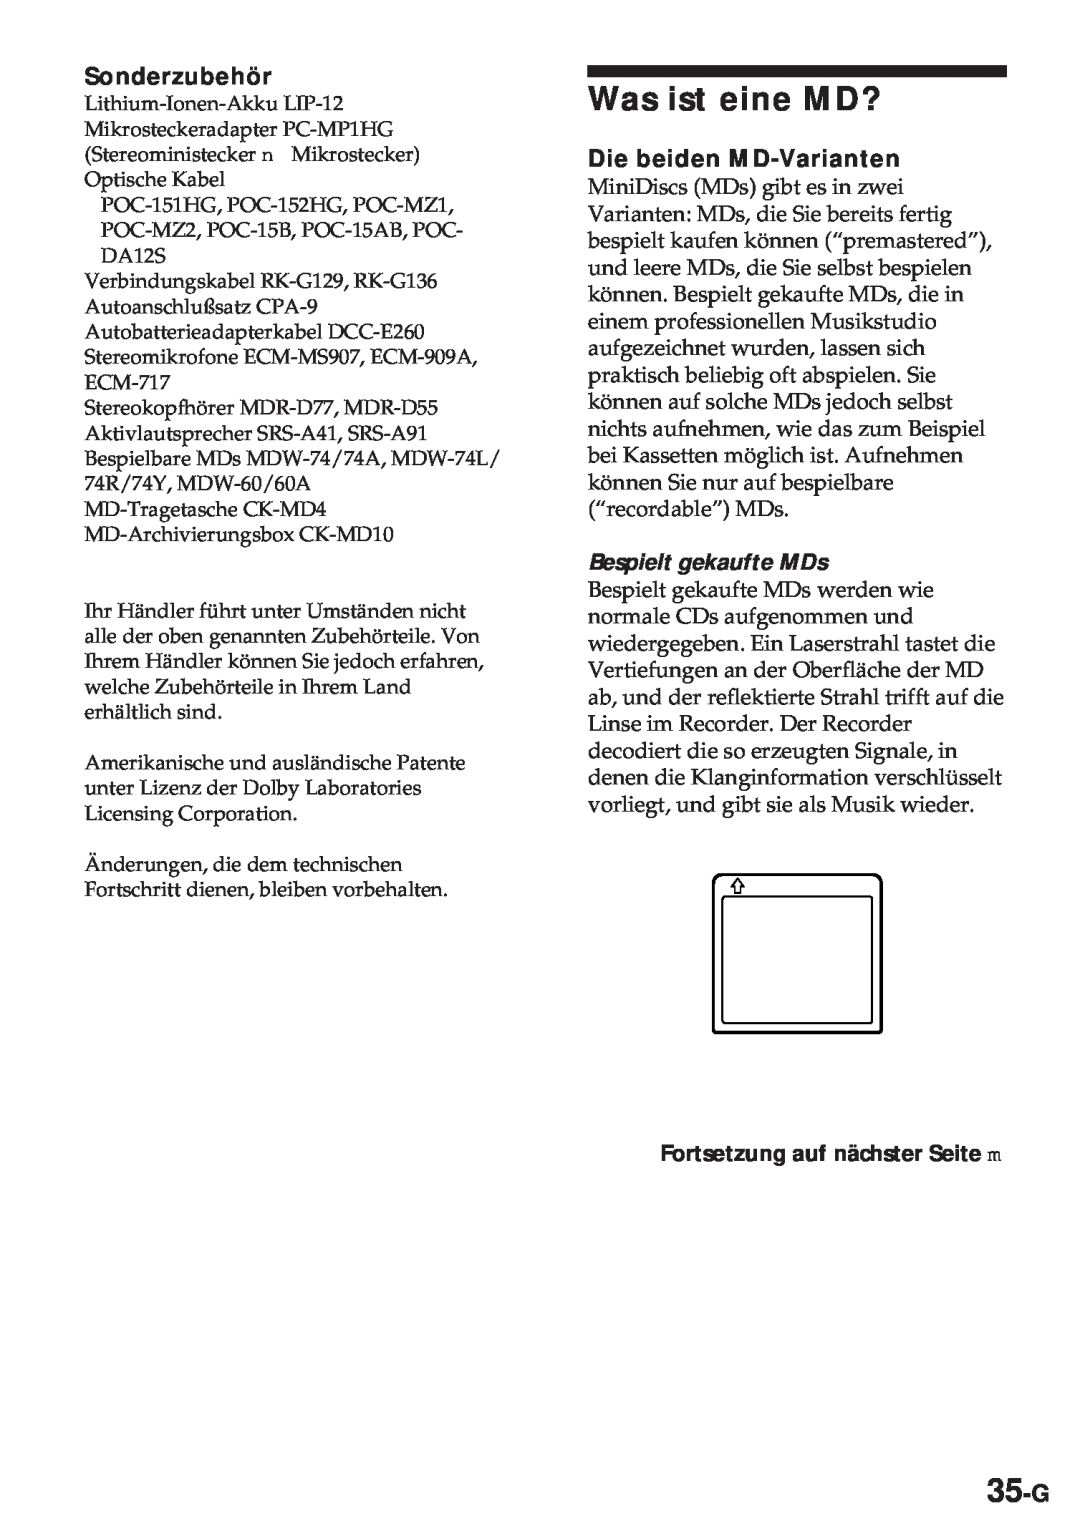 Sony MZ-R30 operating instructions Was ist eine MD?, 35-G, Sonderzubehör, Die beiden MD-Varianten, Bespielt gekaufte MDs 